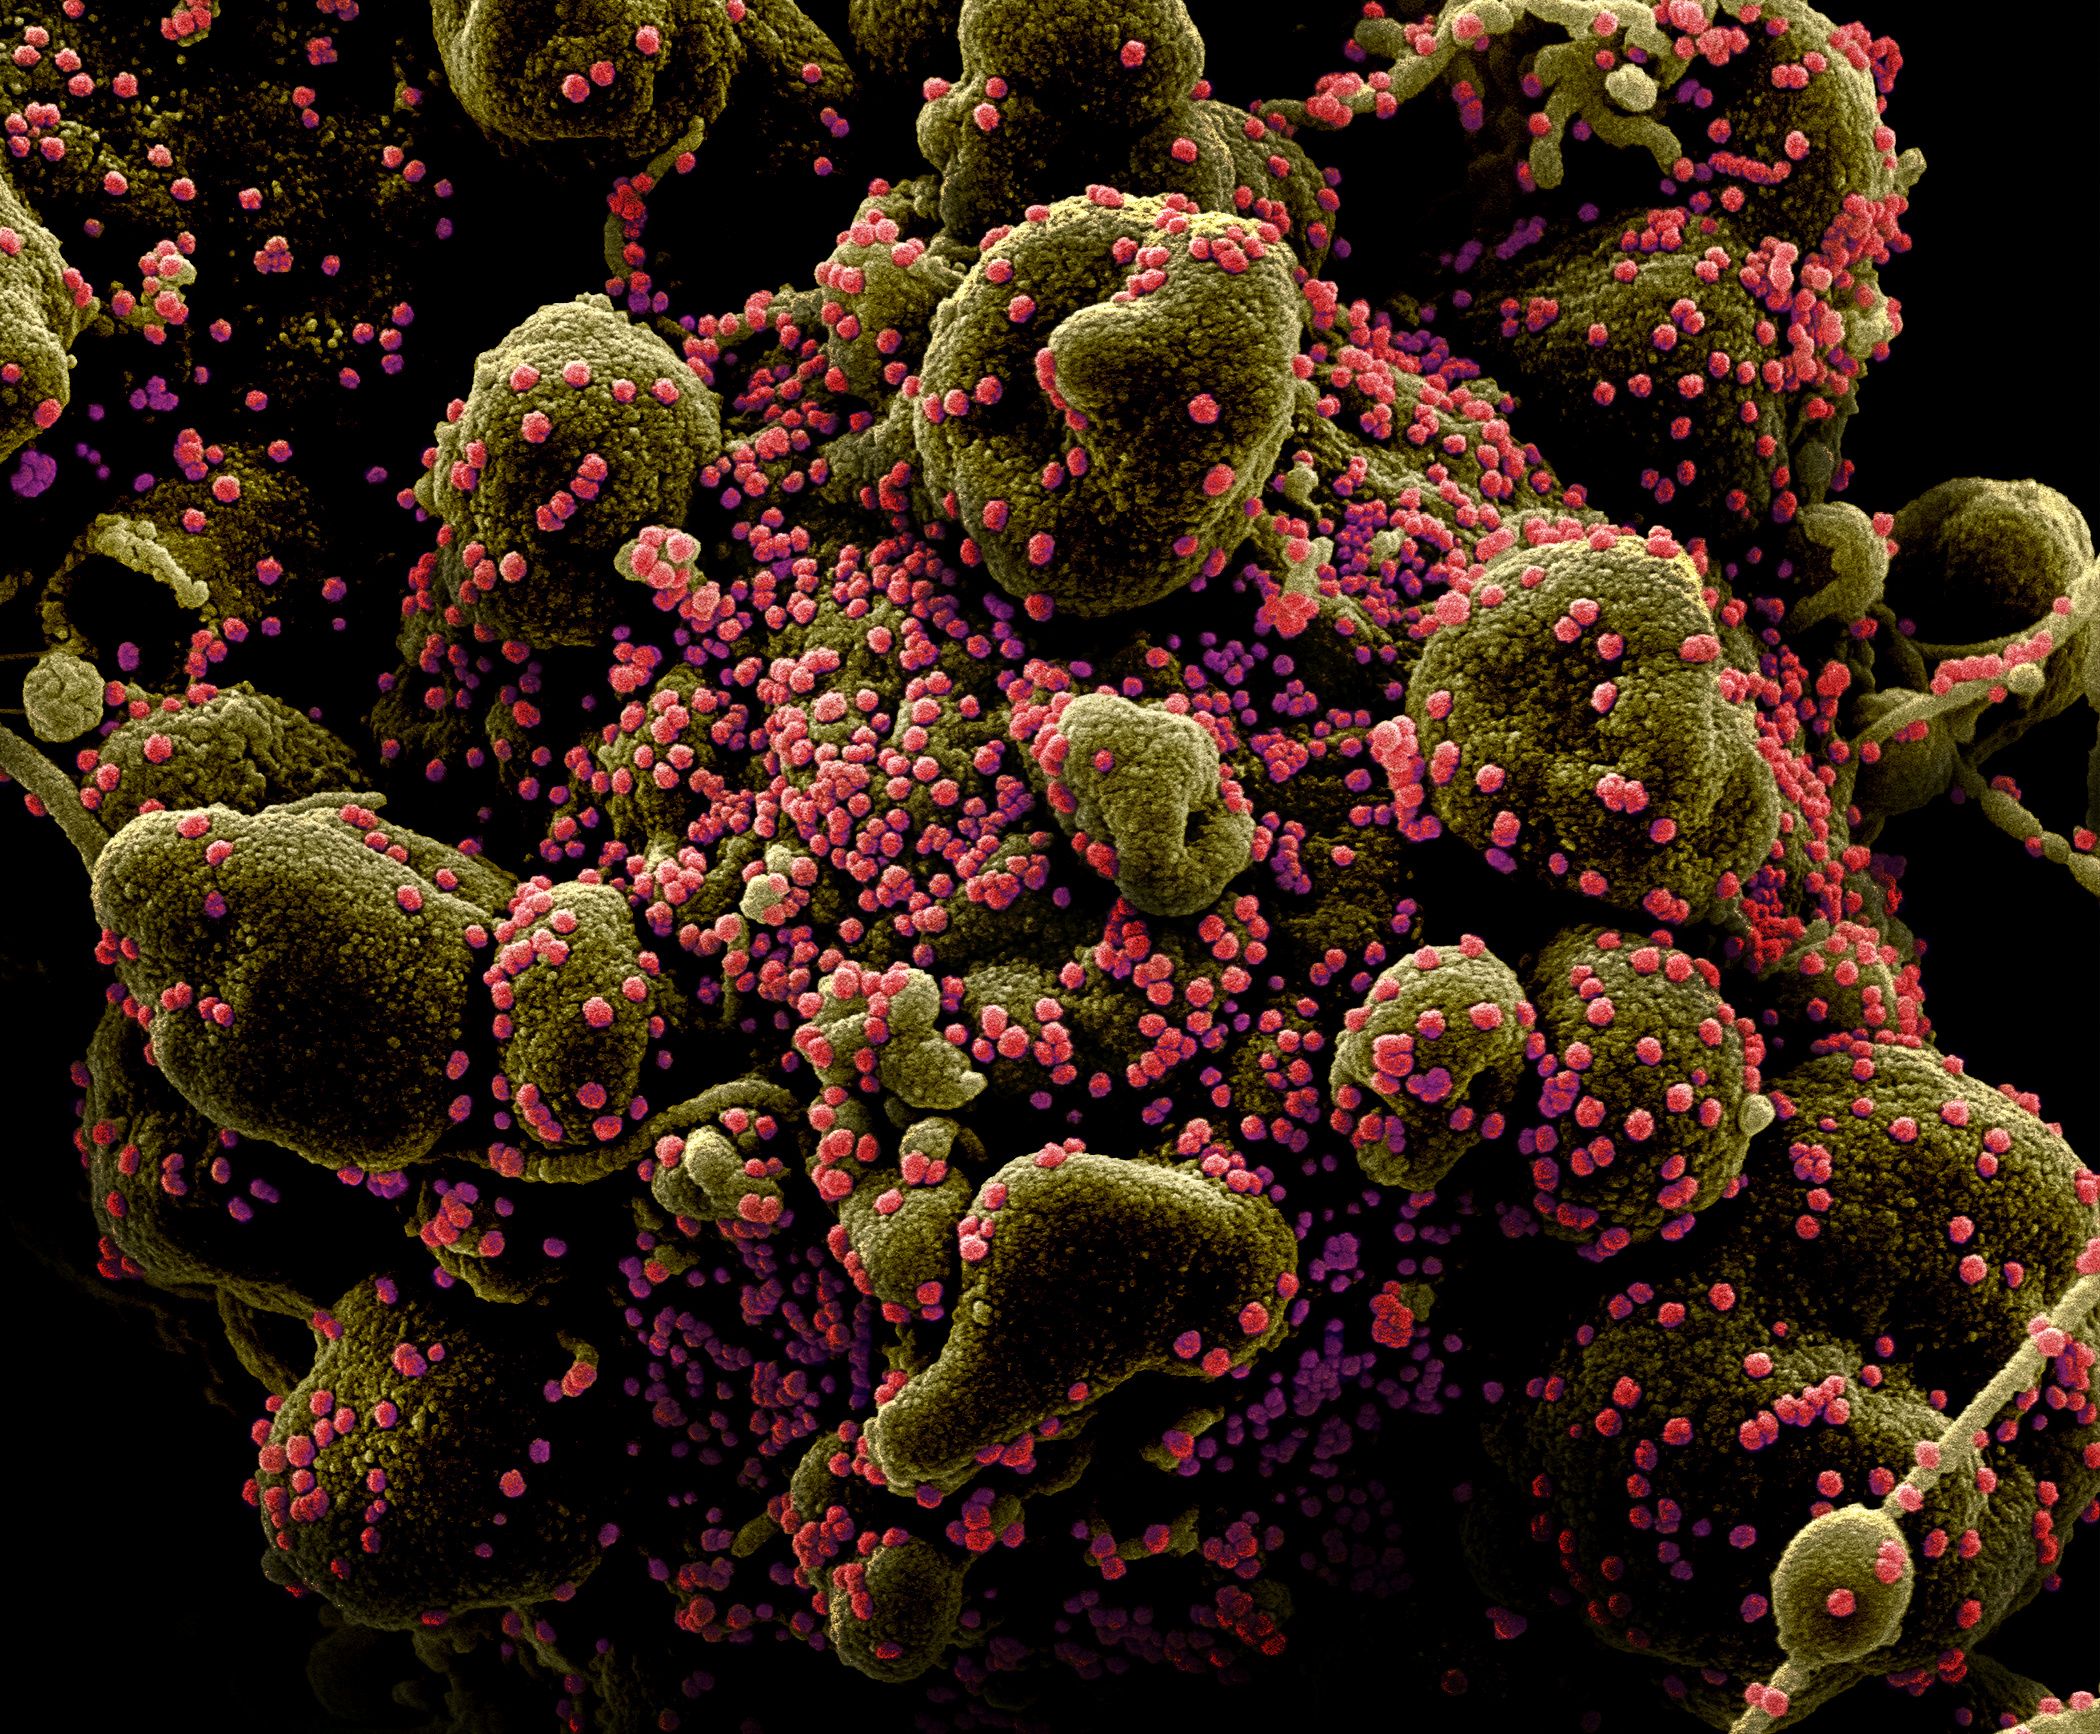 Ковид какая группа вирусов. Вирус коронавирус под микроскопом. Вирус Covid 19 под микроскопом. Covid-19 под микроскопом. Вирус коронавирус микроскоп.